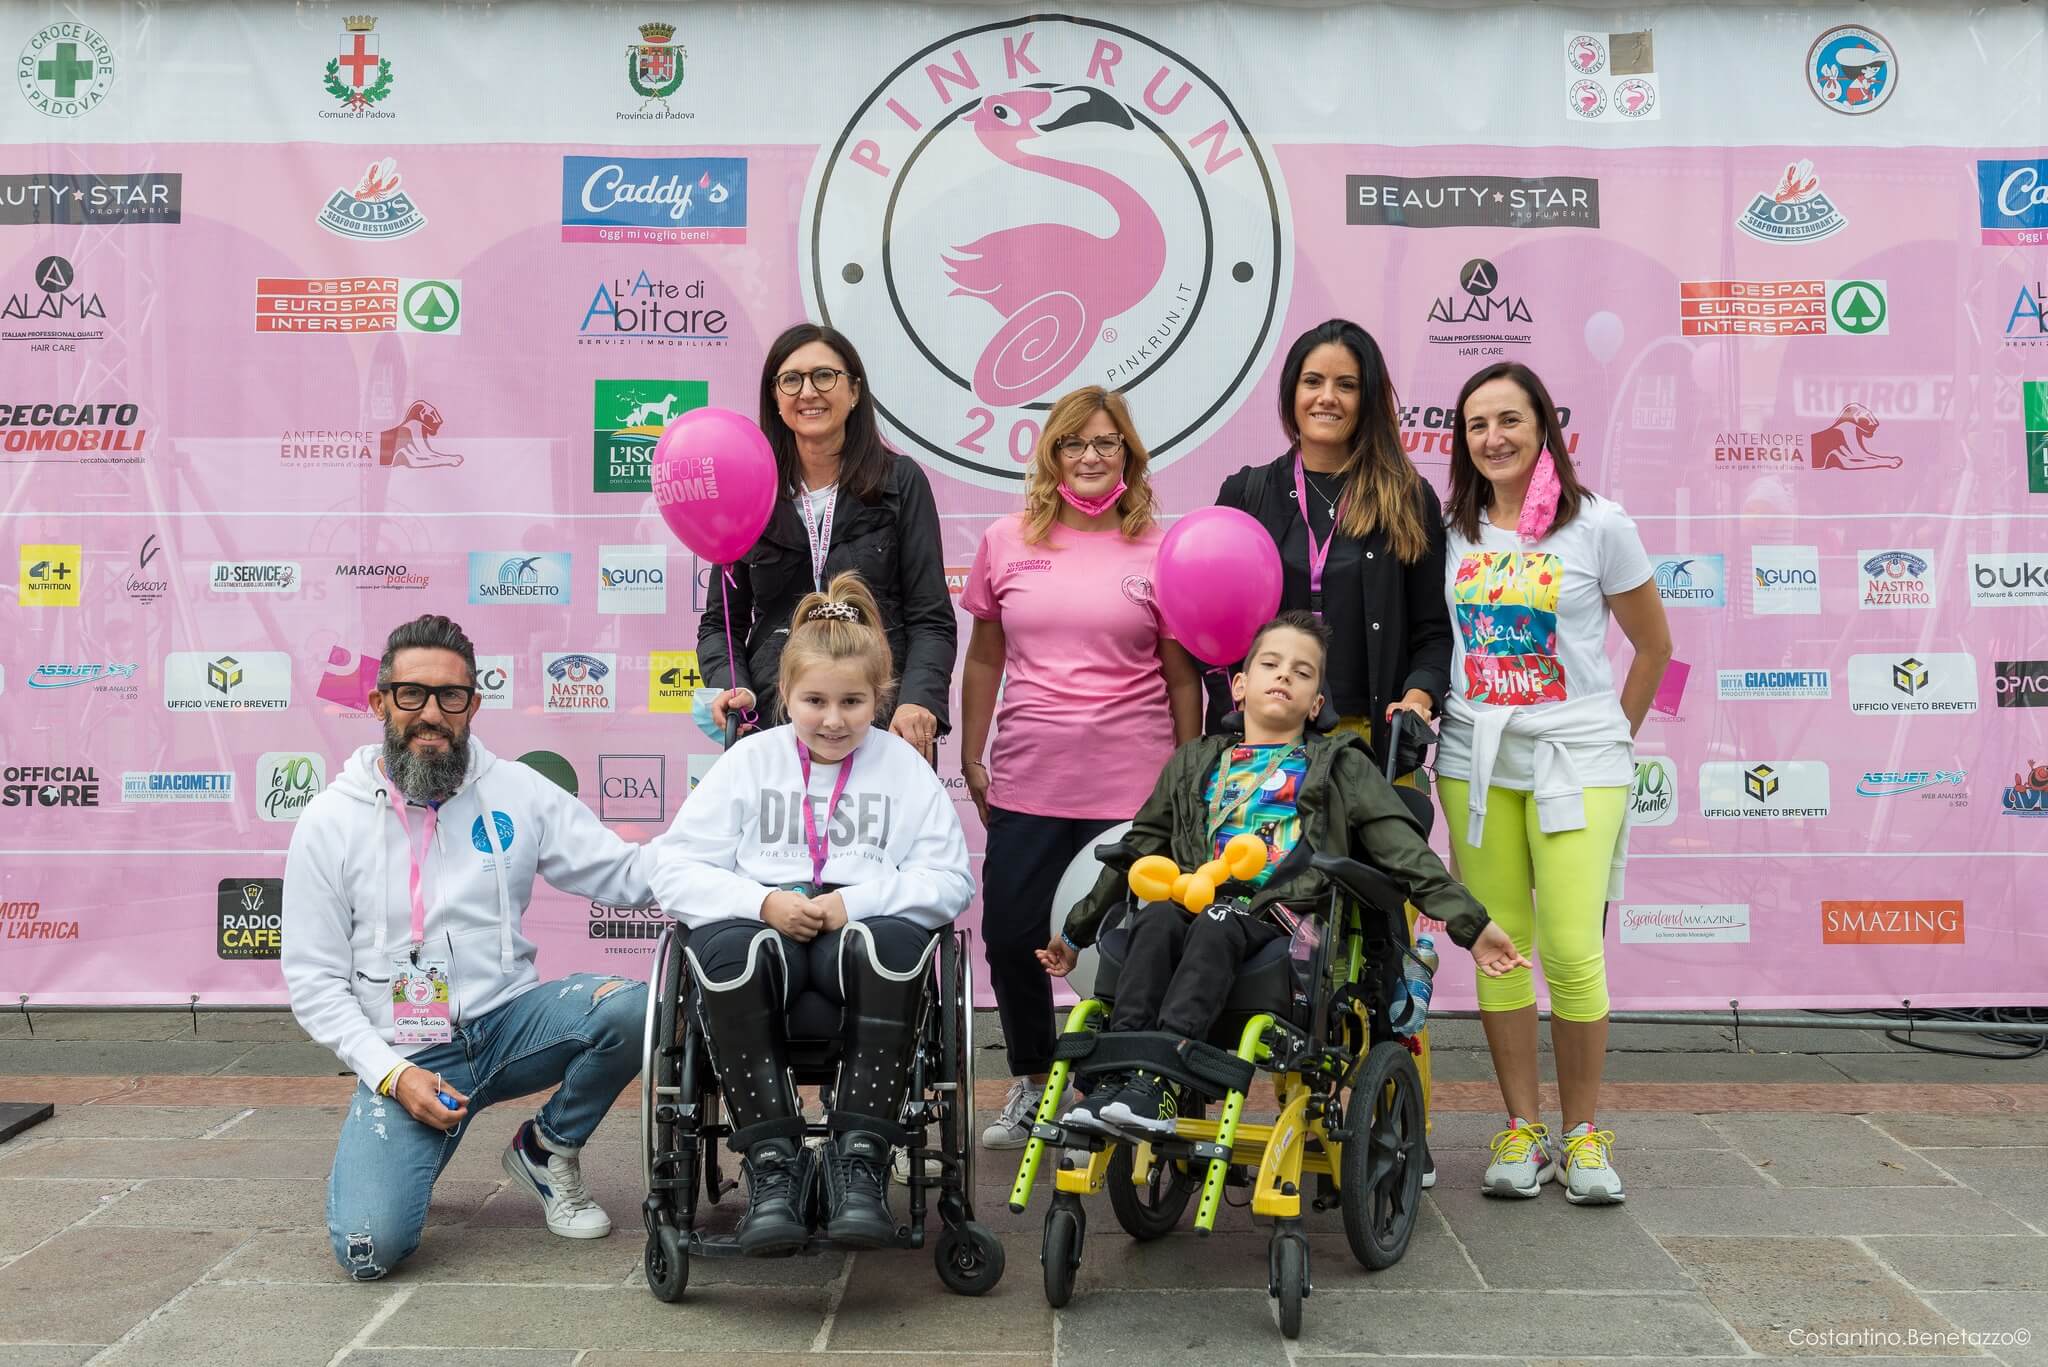 Pink Run sostiene il parco inclusivo per dotarlo di un percorso vita accessibile